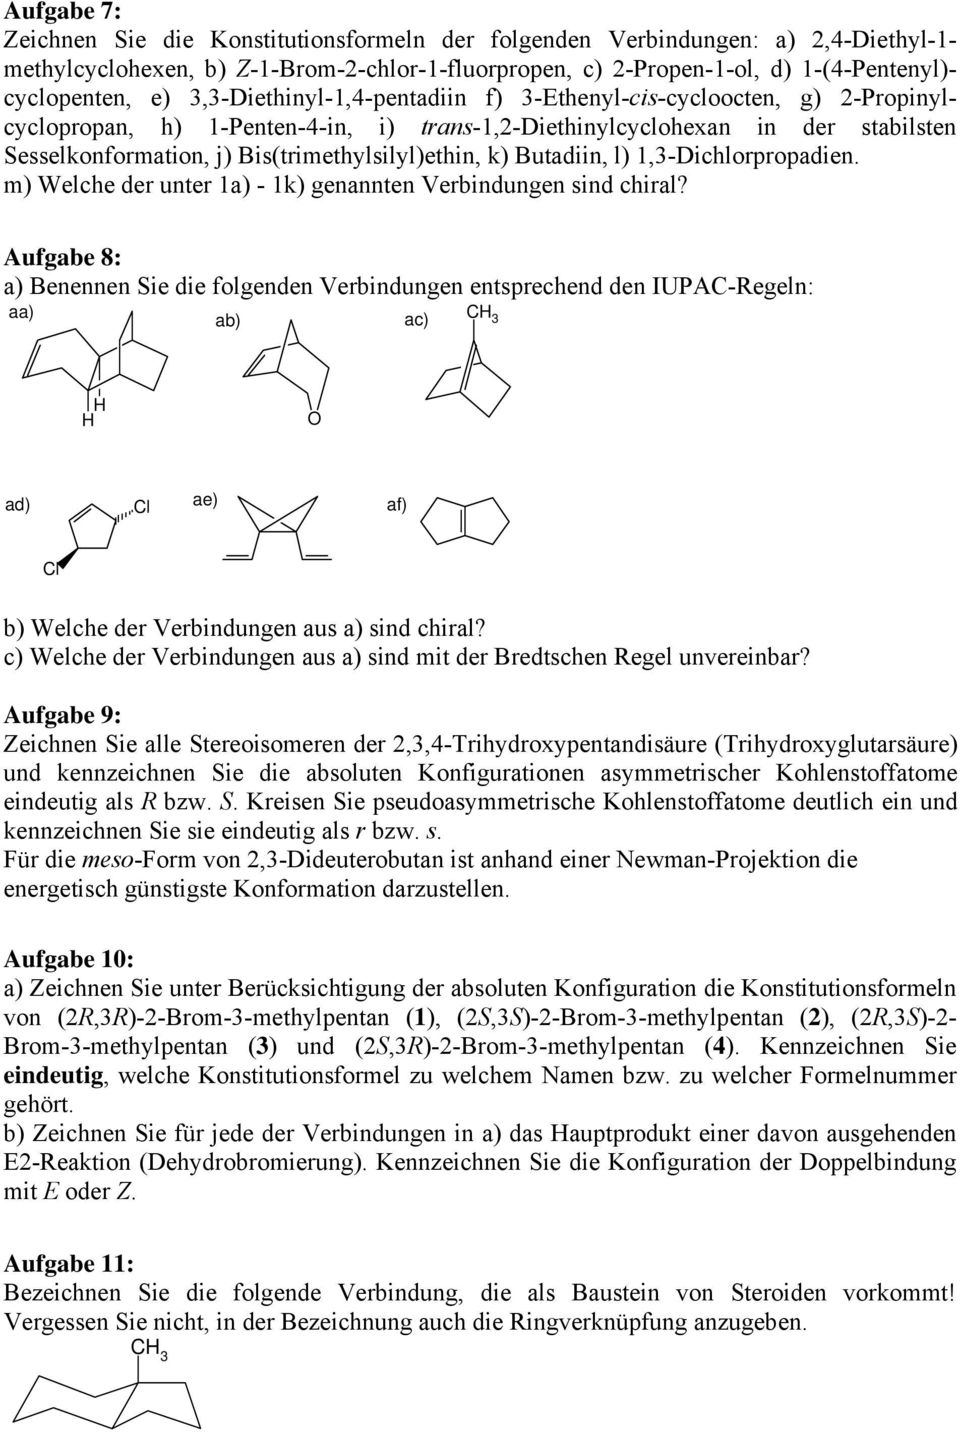 Bis(trimethylsilyl)ethin, k) Butadiin, l) 1,3-Dichlorpropadien. m) Welche der unter 1a) - 1k) genannten Verbindungen sind chiral?